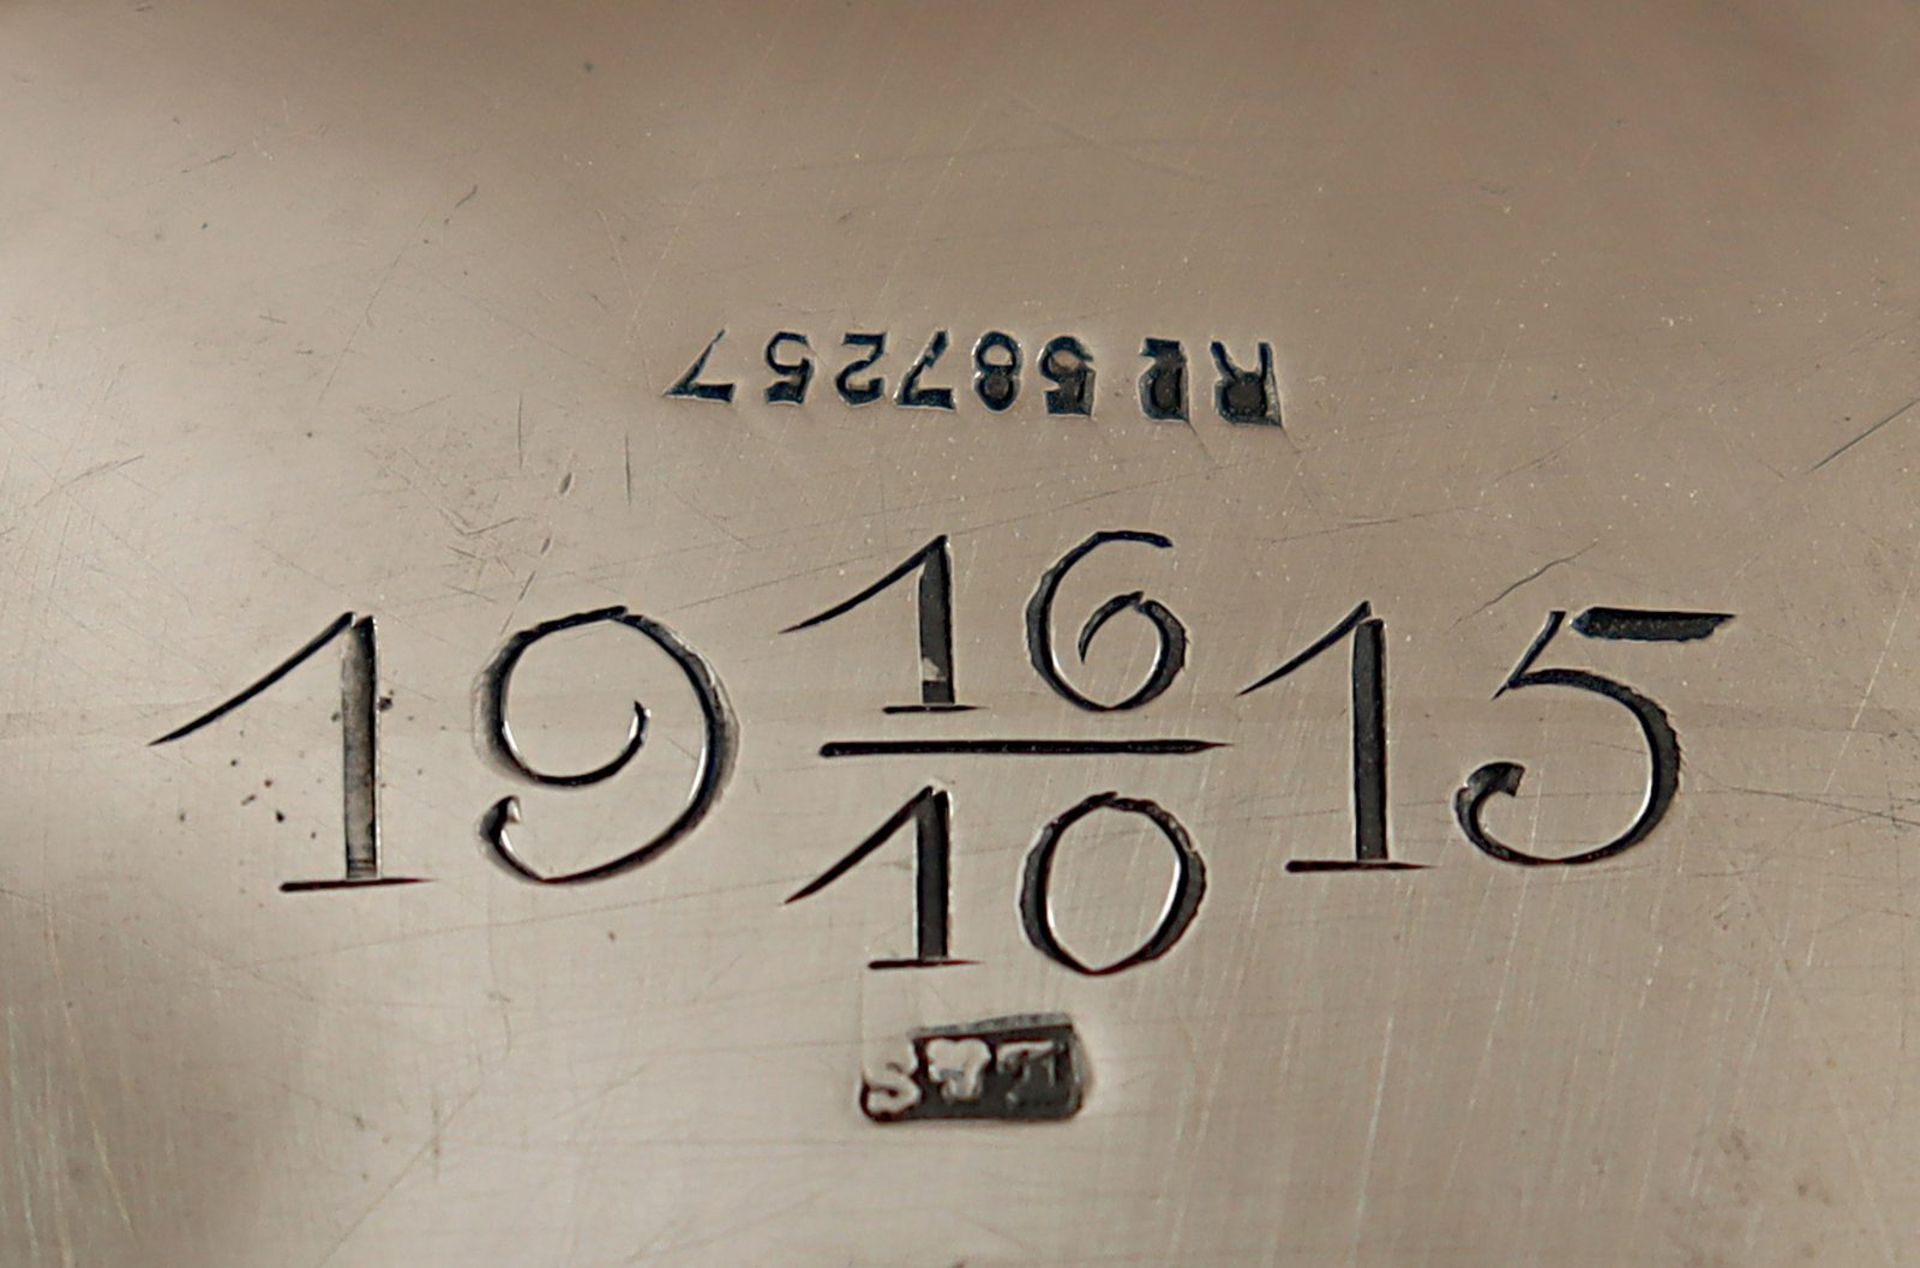 Wasserkessel mit Rechaud, 1190 g, wohl Deutsch, um 1915 - Bild 2 aus 2